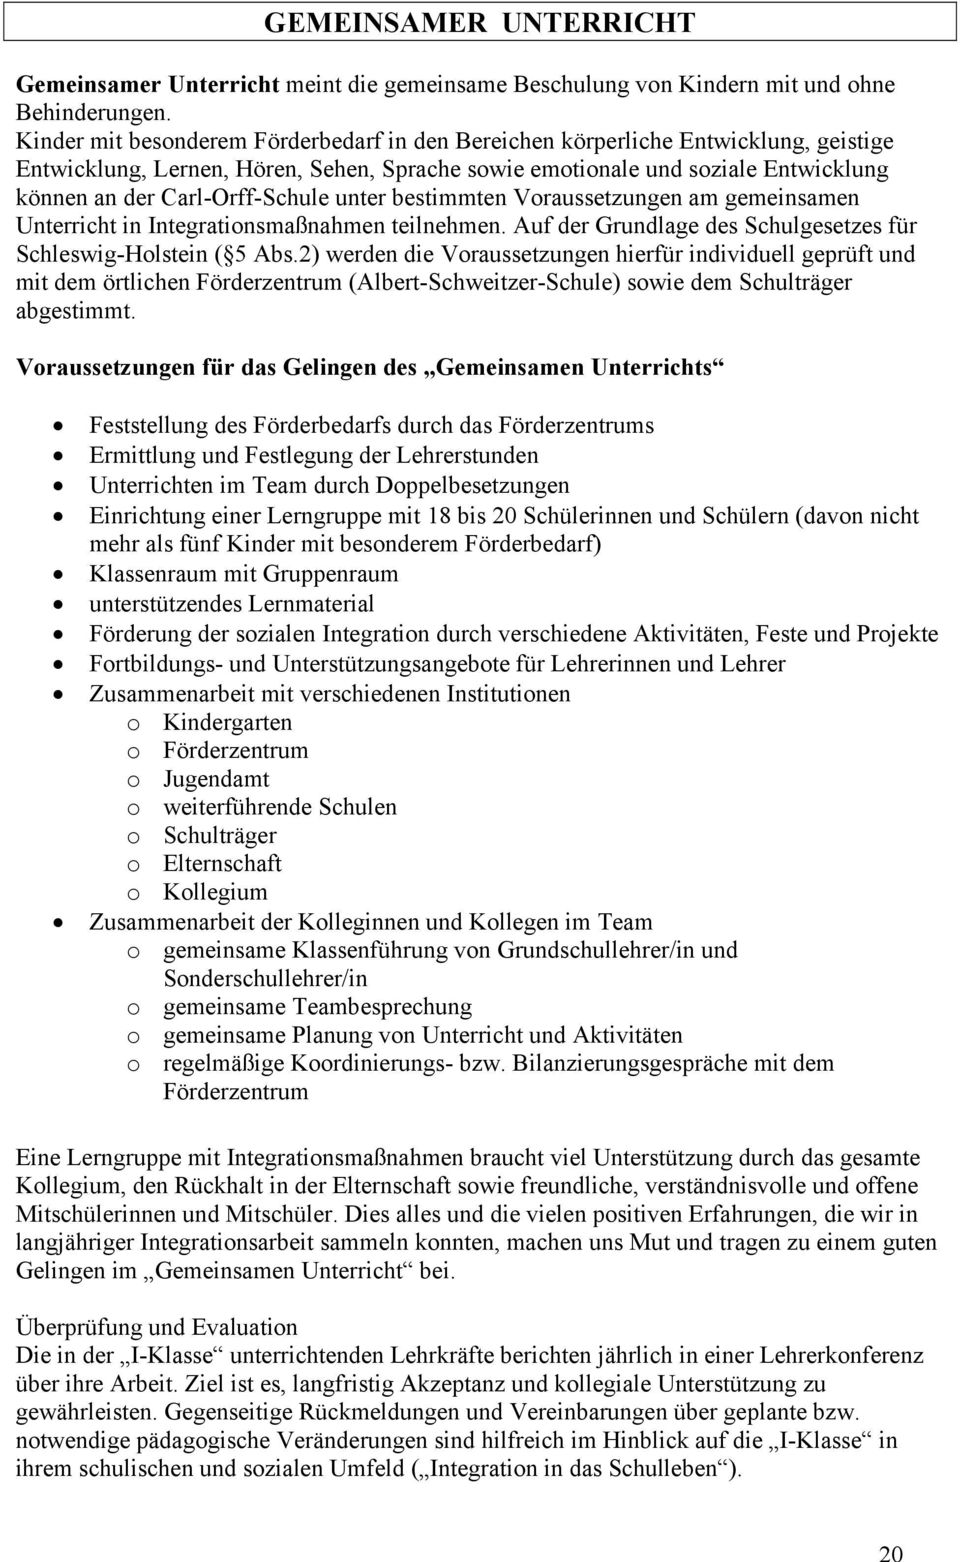 Carl-Orff-Schule unter bestimmten Voraussetzungen am gemeinsamen Unterricht in Integrationsmaßnahmen teilnehmen. Auf der Grundlage des Schulgesetzes für Schleswig-Holstein ( 5 Abs.